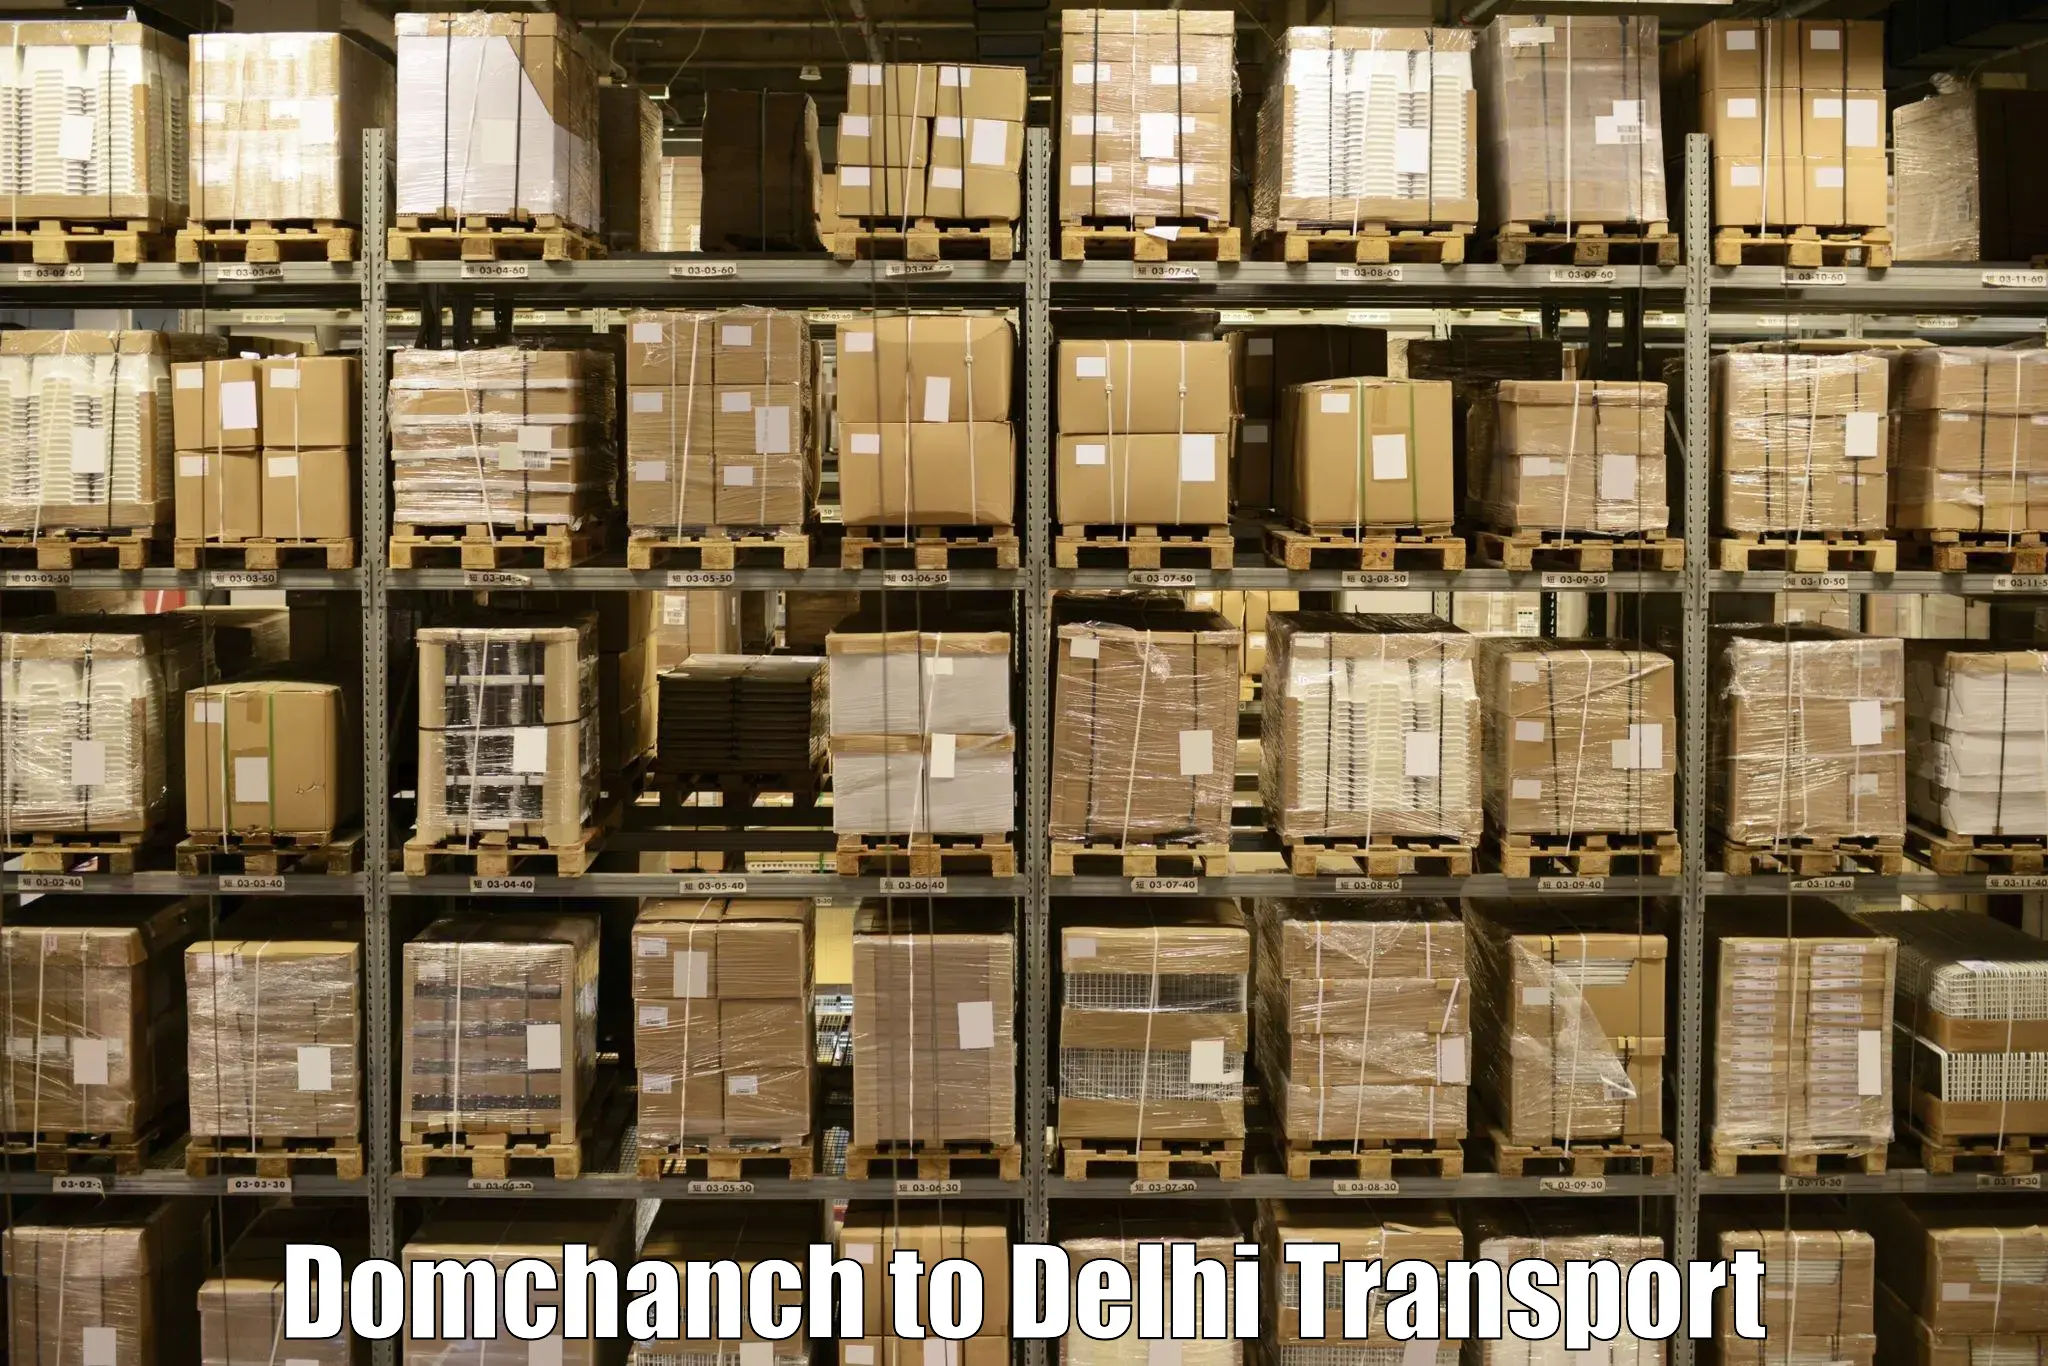 Furniture transport service Domchanch to Sarojini Nagar